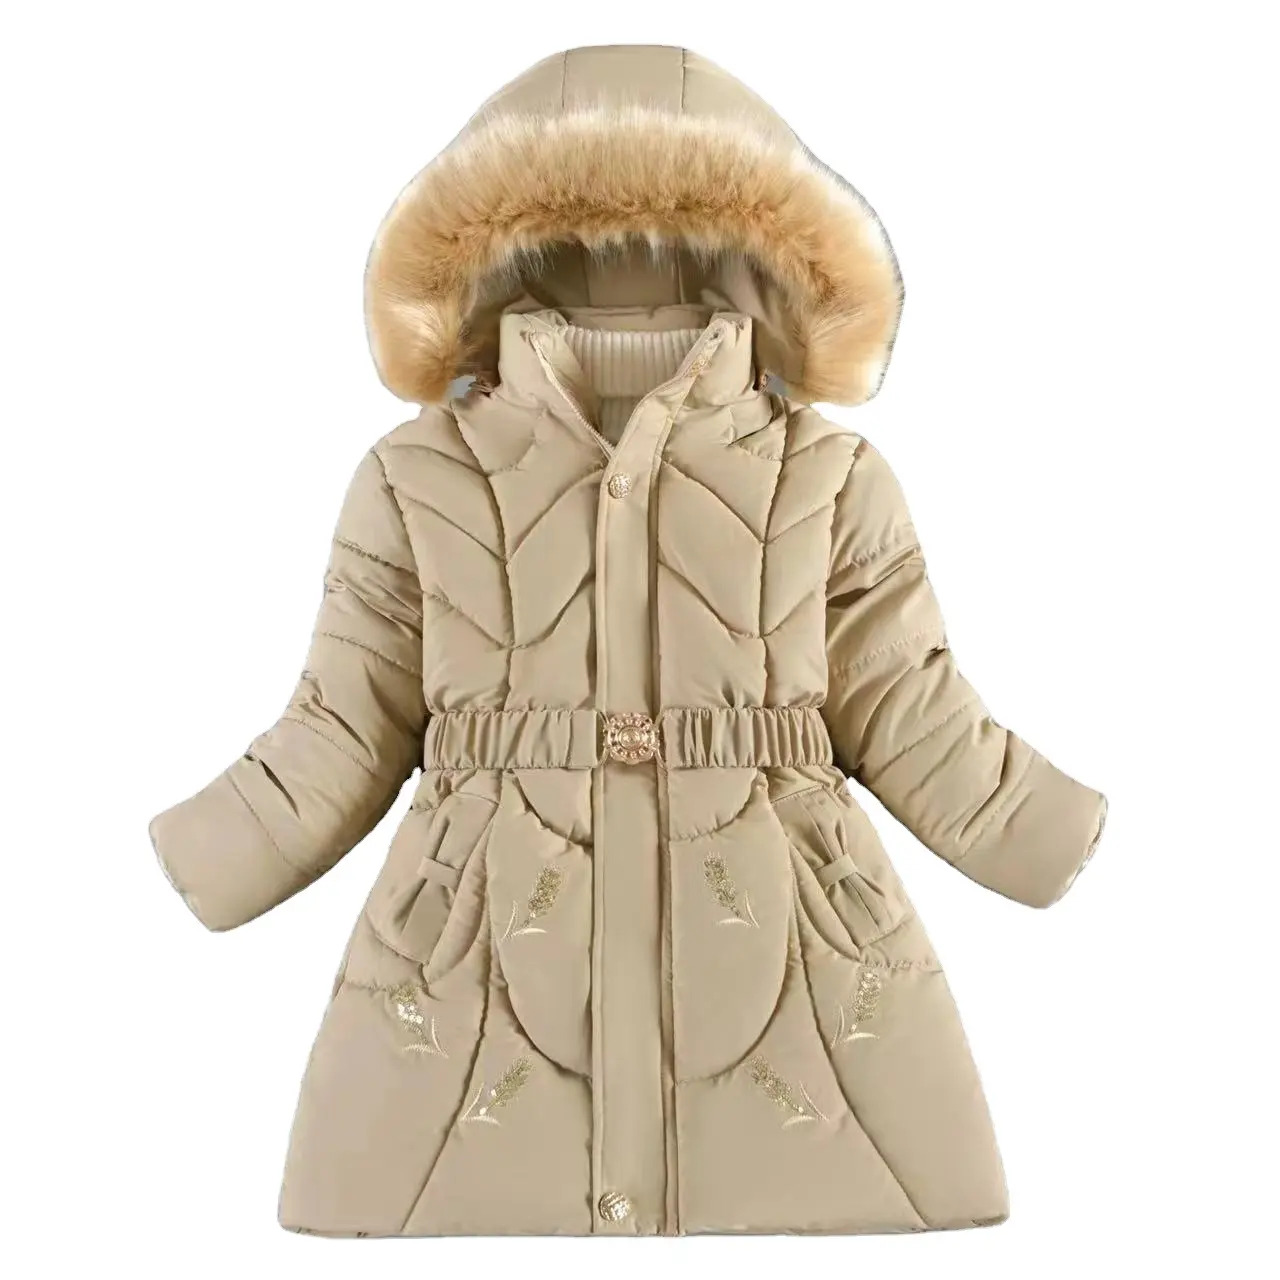 도매 최신 디자인 패션 겨울 유지 따뜻한 소녀 다운 재킷 십대 두꺼운 방한 후드 방풍 코트